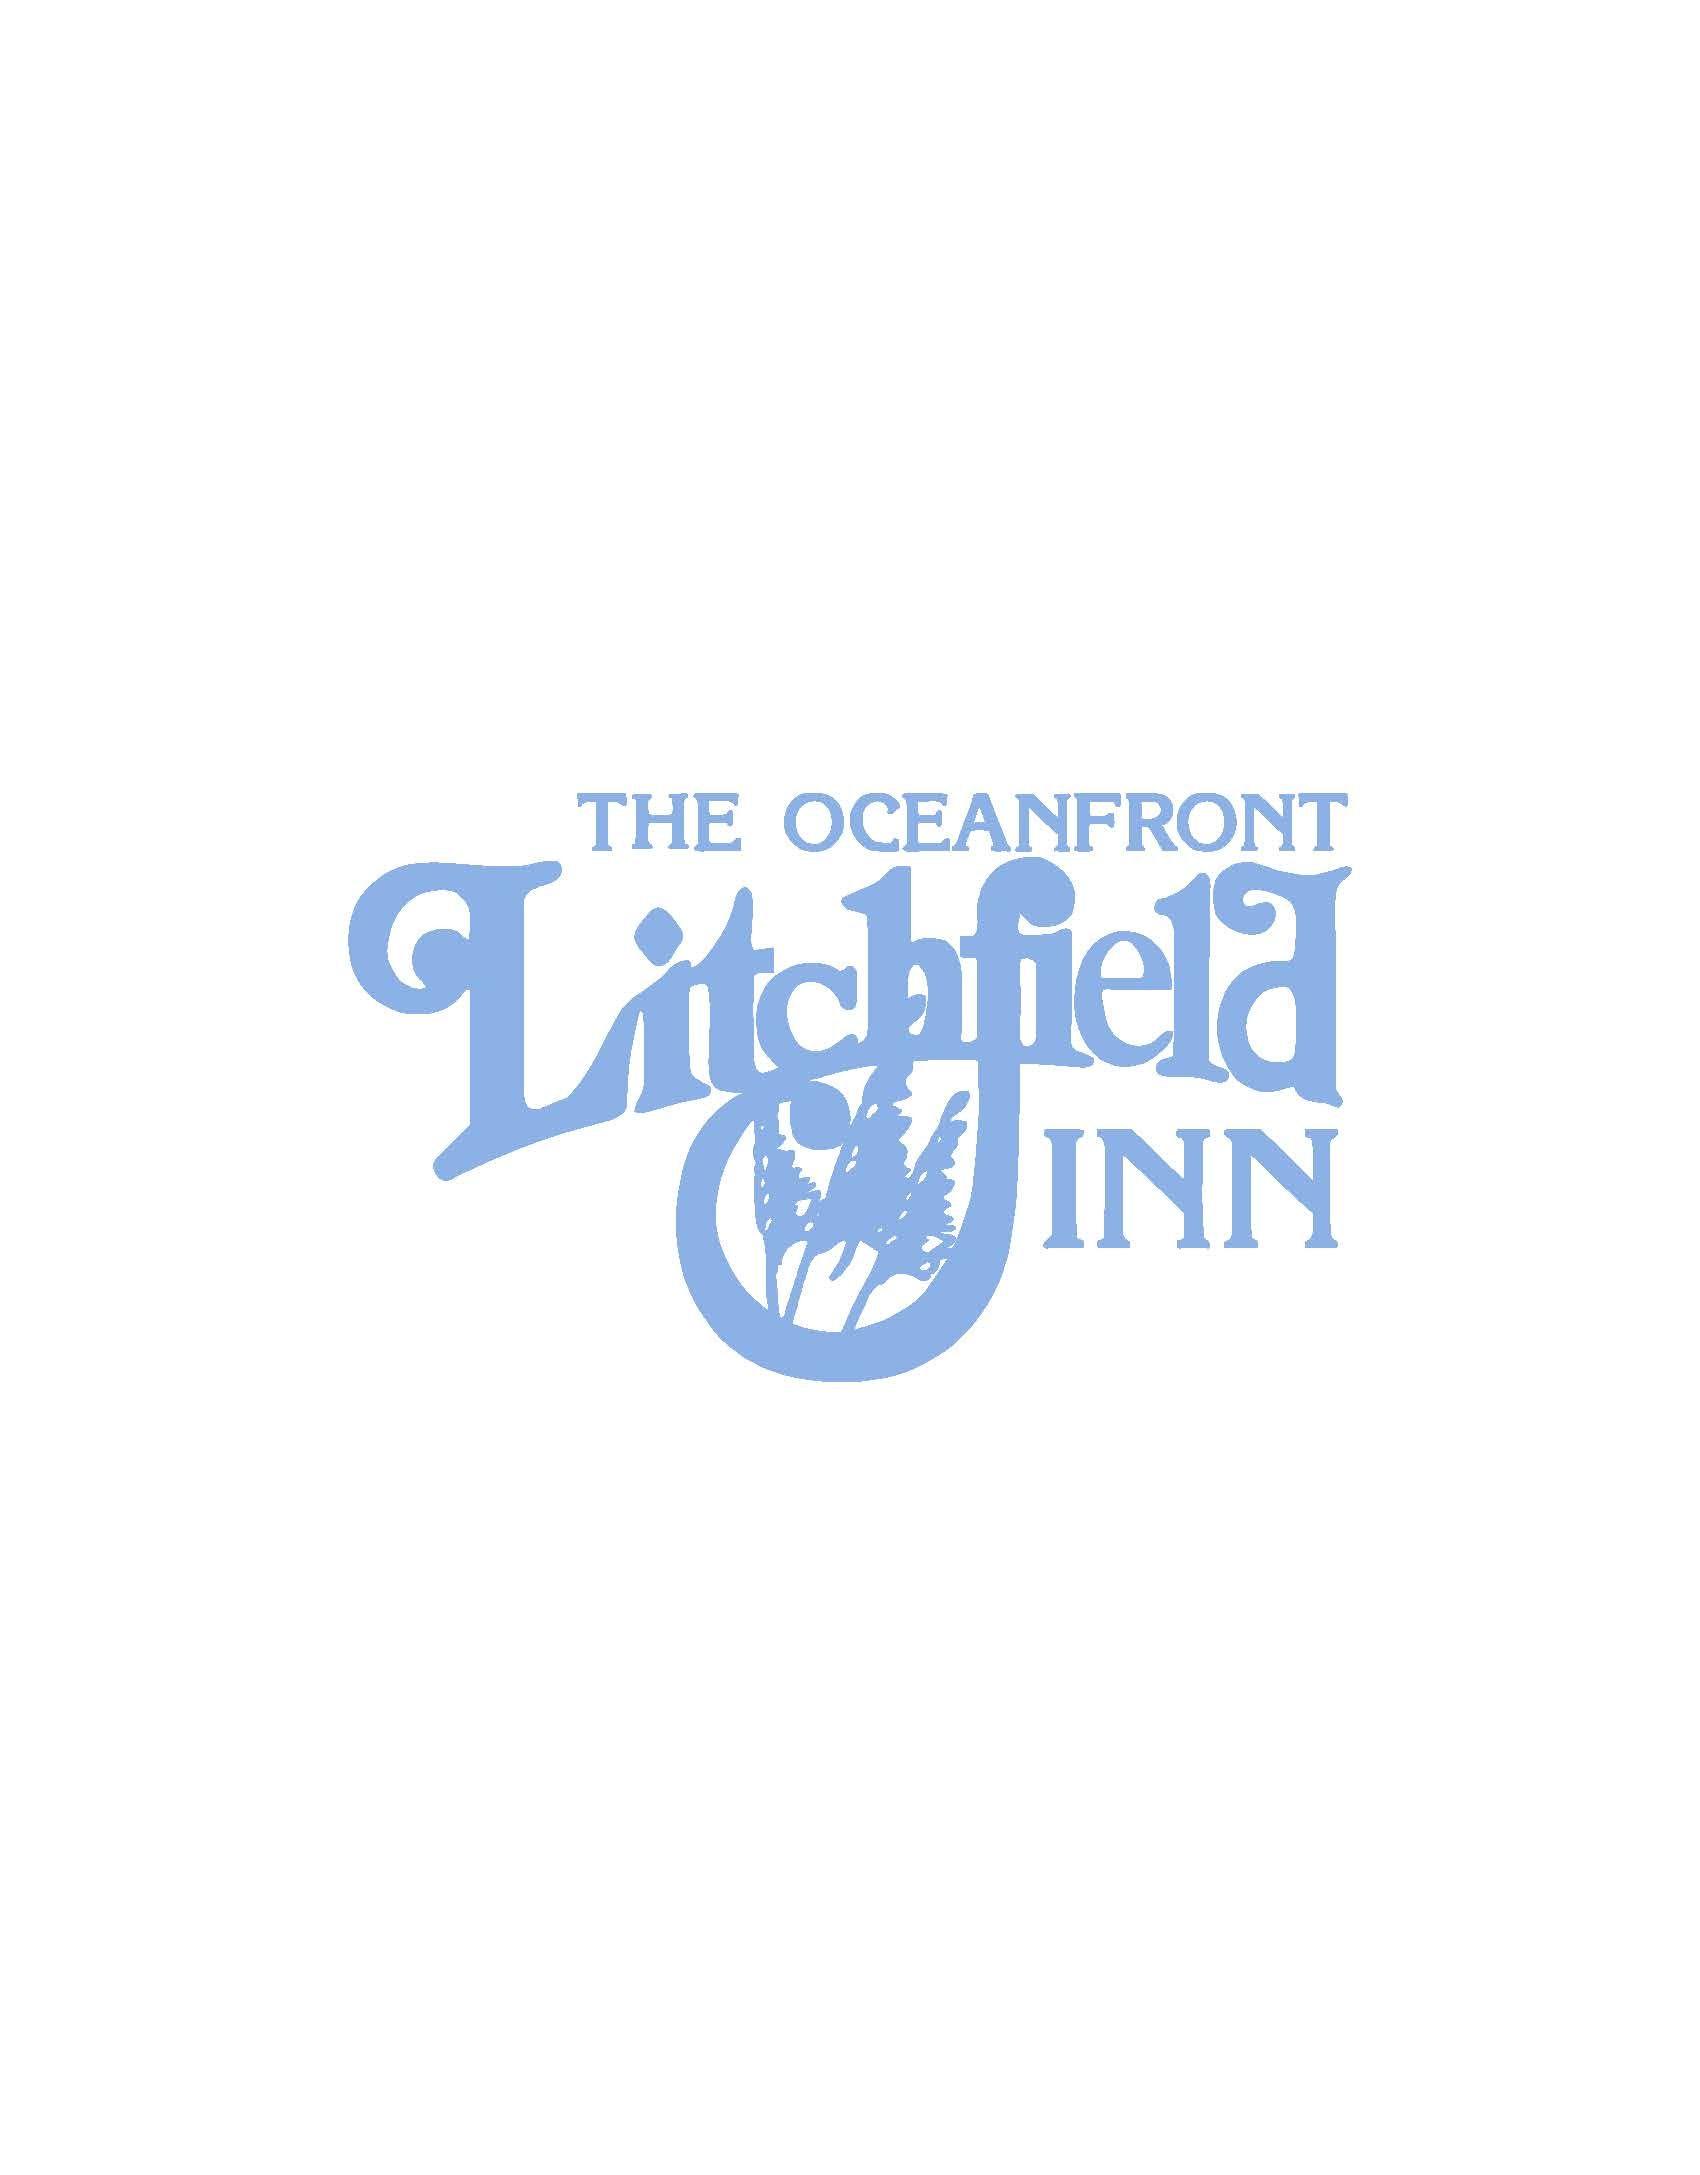 Litchfield Logo - Oceanfront Litchfield Inn - Hammock Coast SC